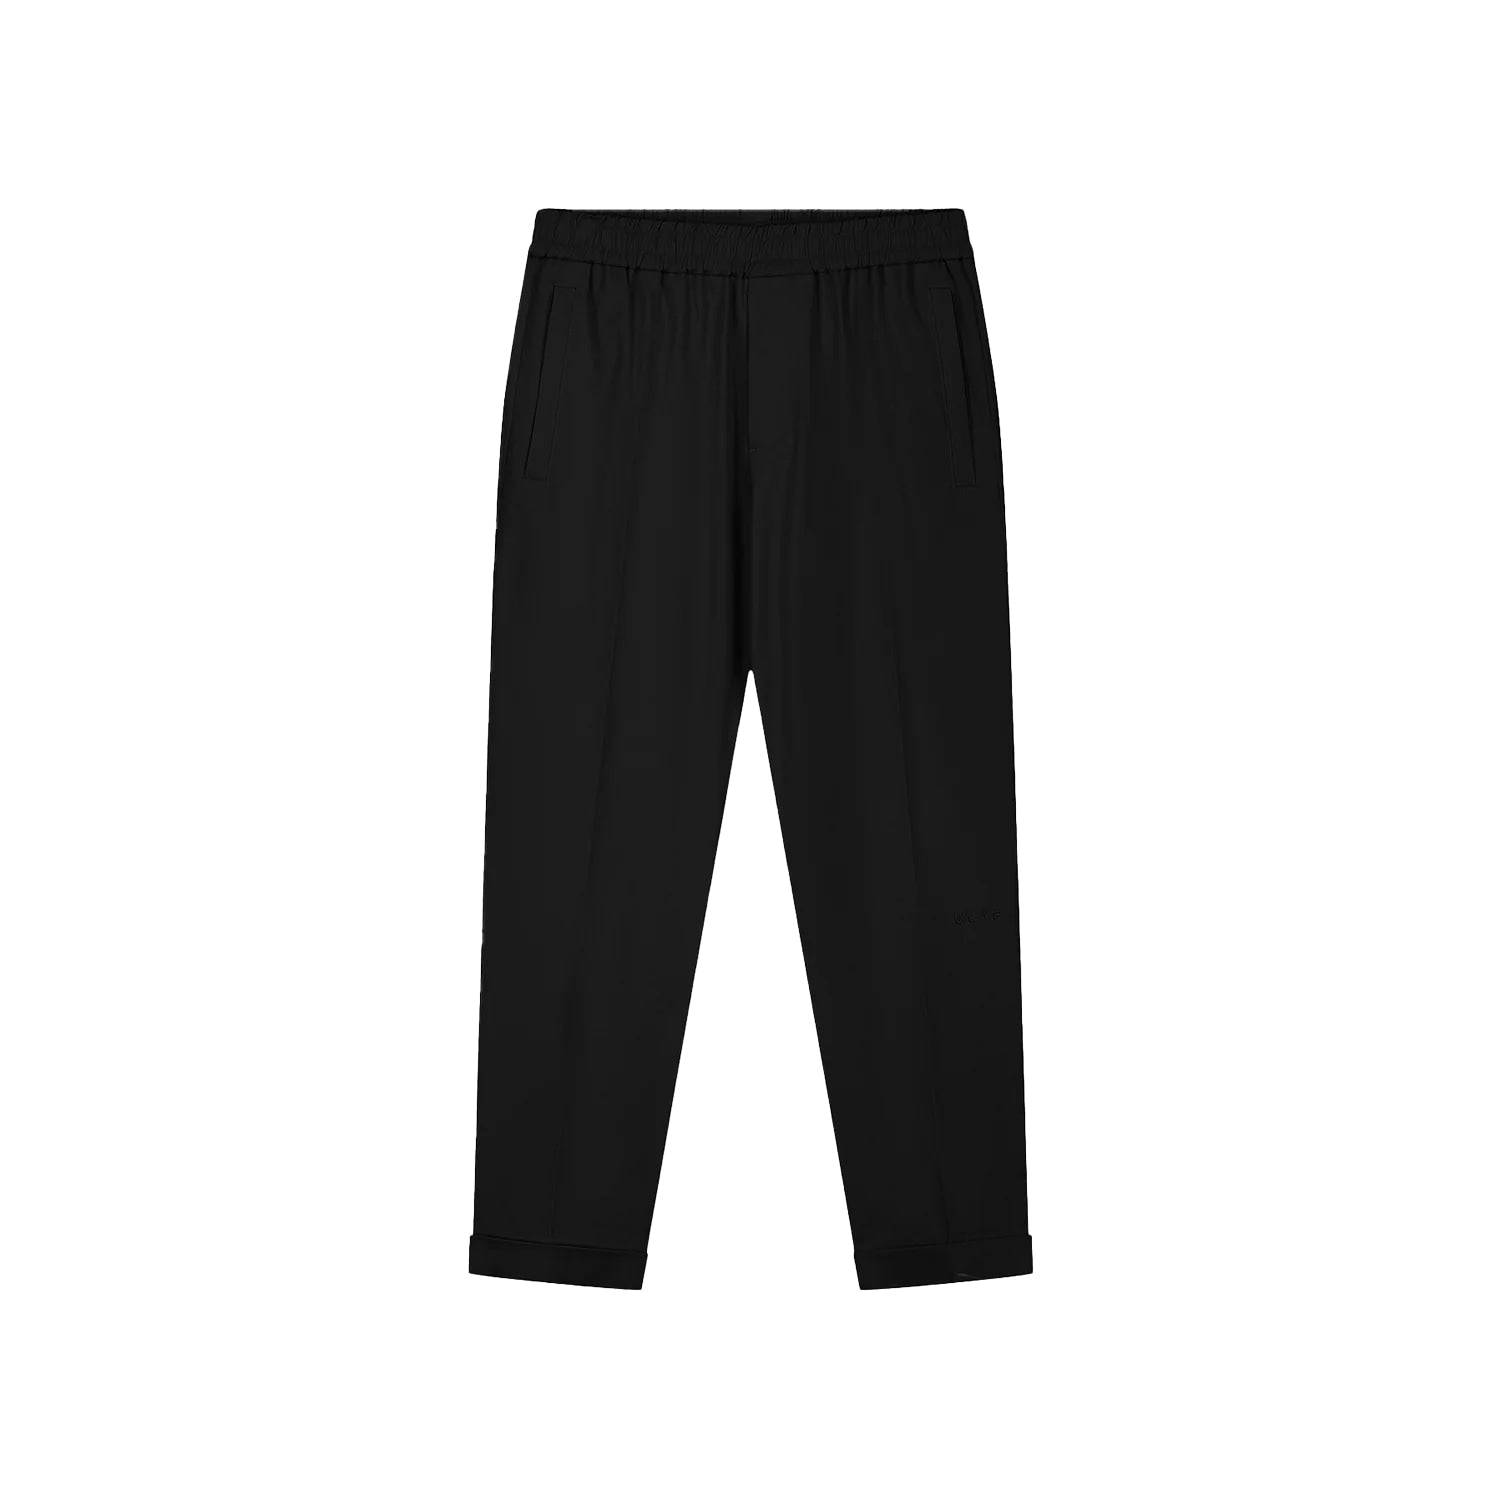 olaf_olaf slim cotton trousers_black_3_4